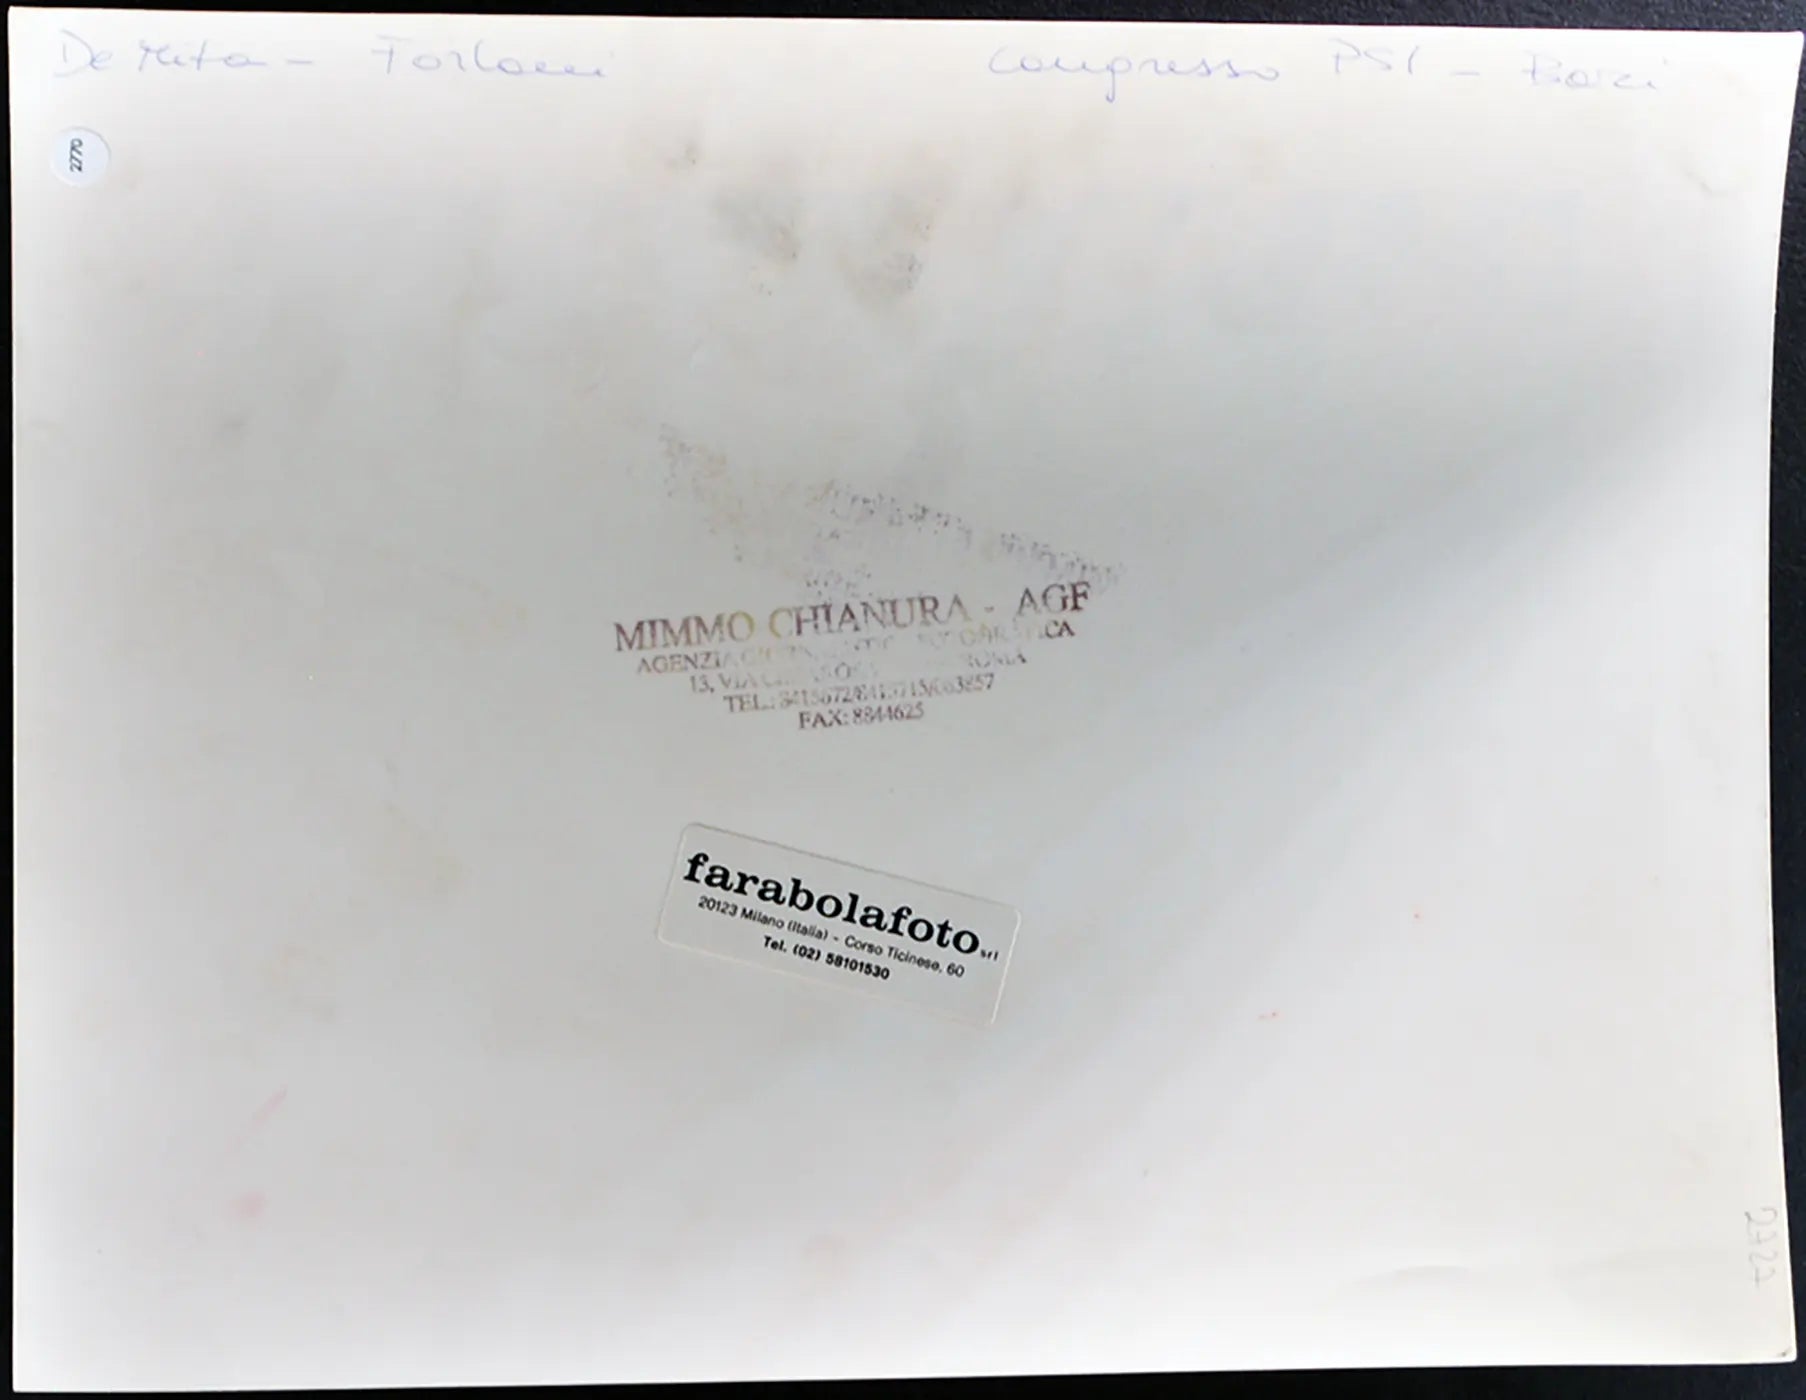 Congresso Psi De Mita e Forlani anni 90 Ft 2770 - Stampa 24x30 cm - Farabola Stampa ai sali d'argento